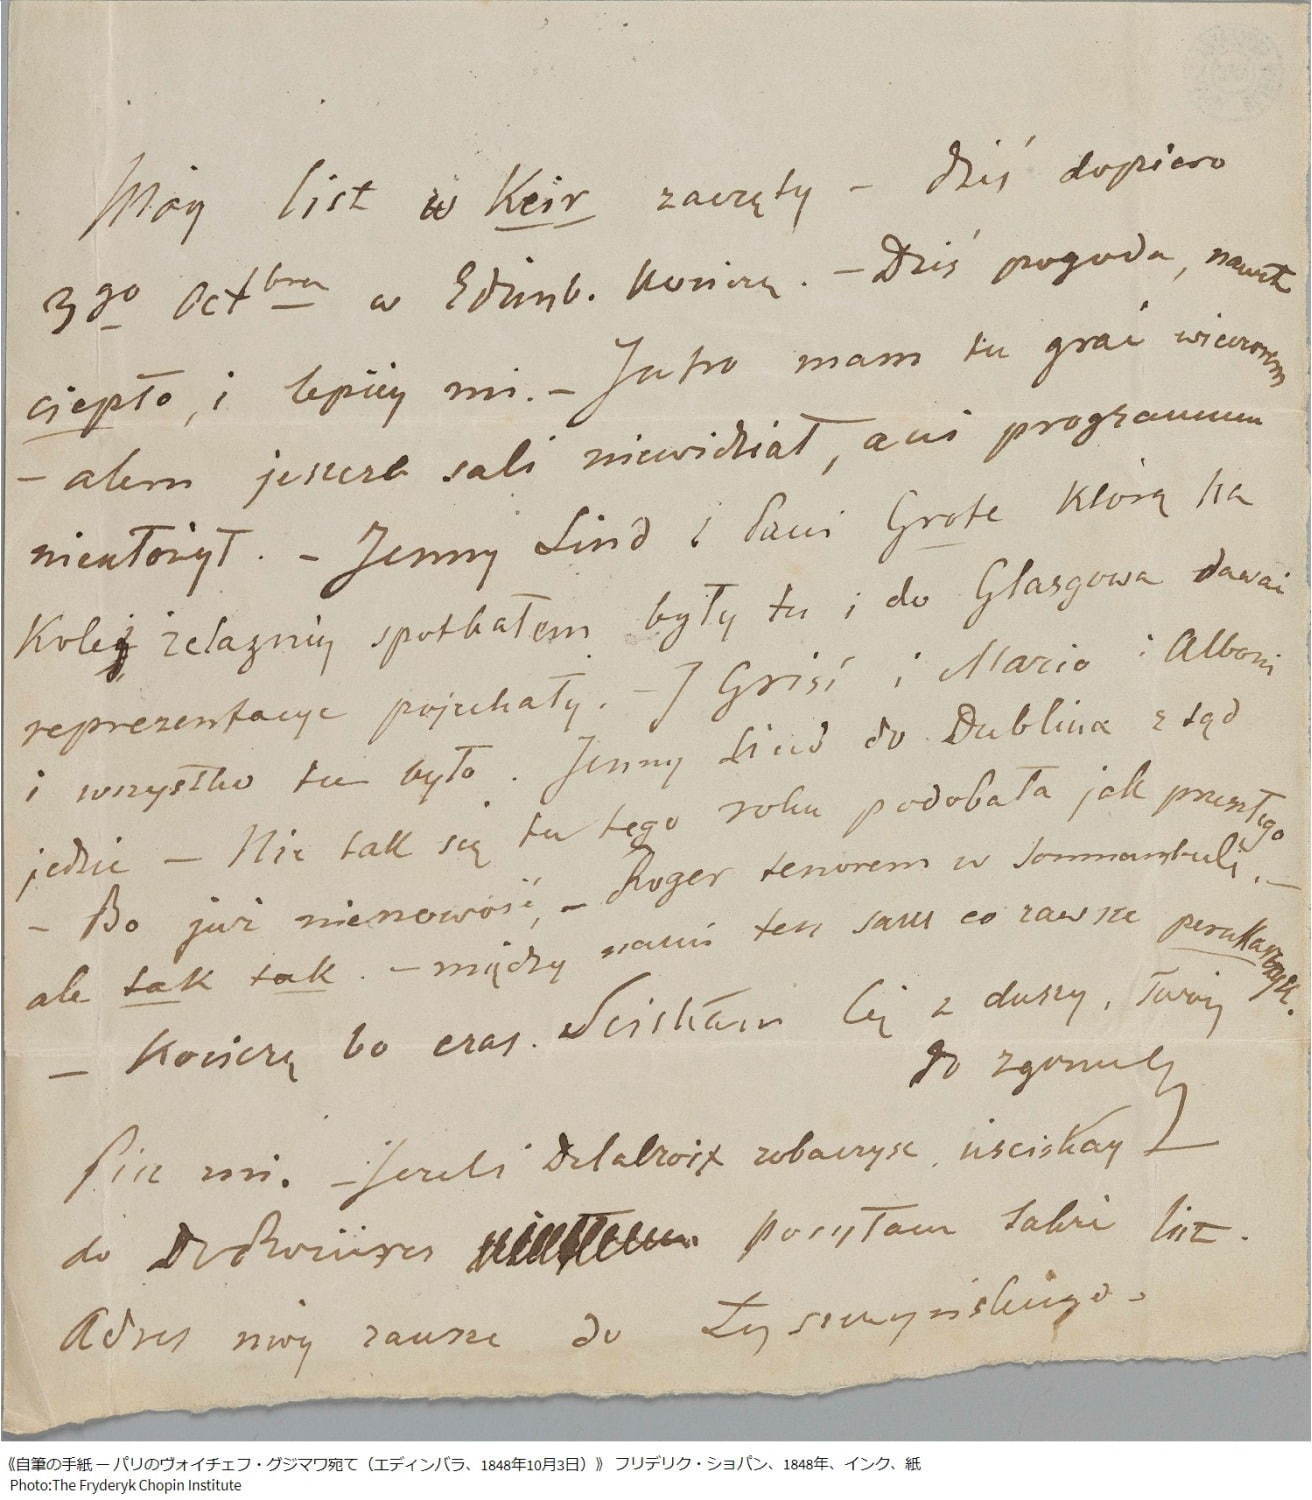 《自筆の手紙 ー パリのヴォイチェフ・グジマワ宛て(エディンバラ、1848年10月3日)》
フリデリク・ショパン、1848年、インク、紙
Photo:The Fryderyk Chopin Institute